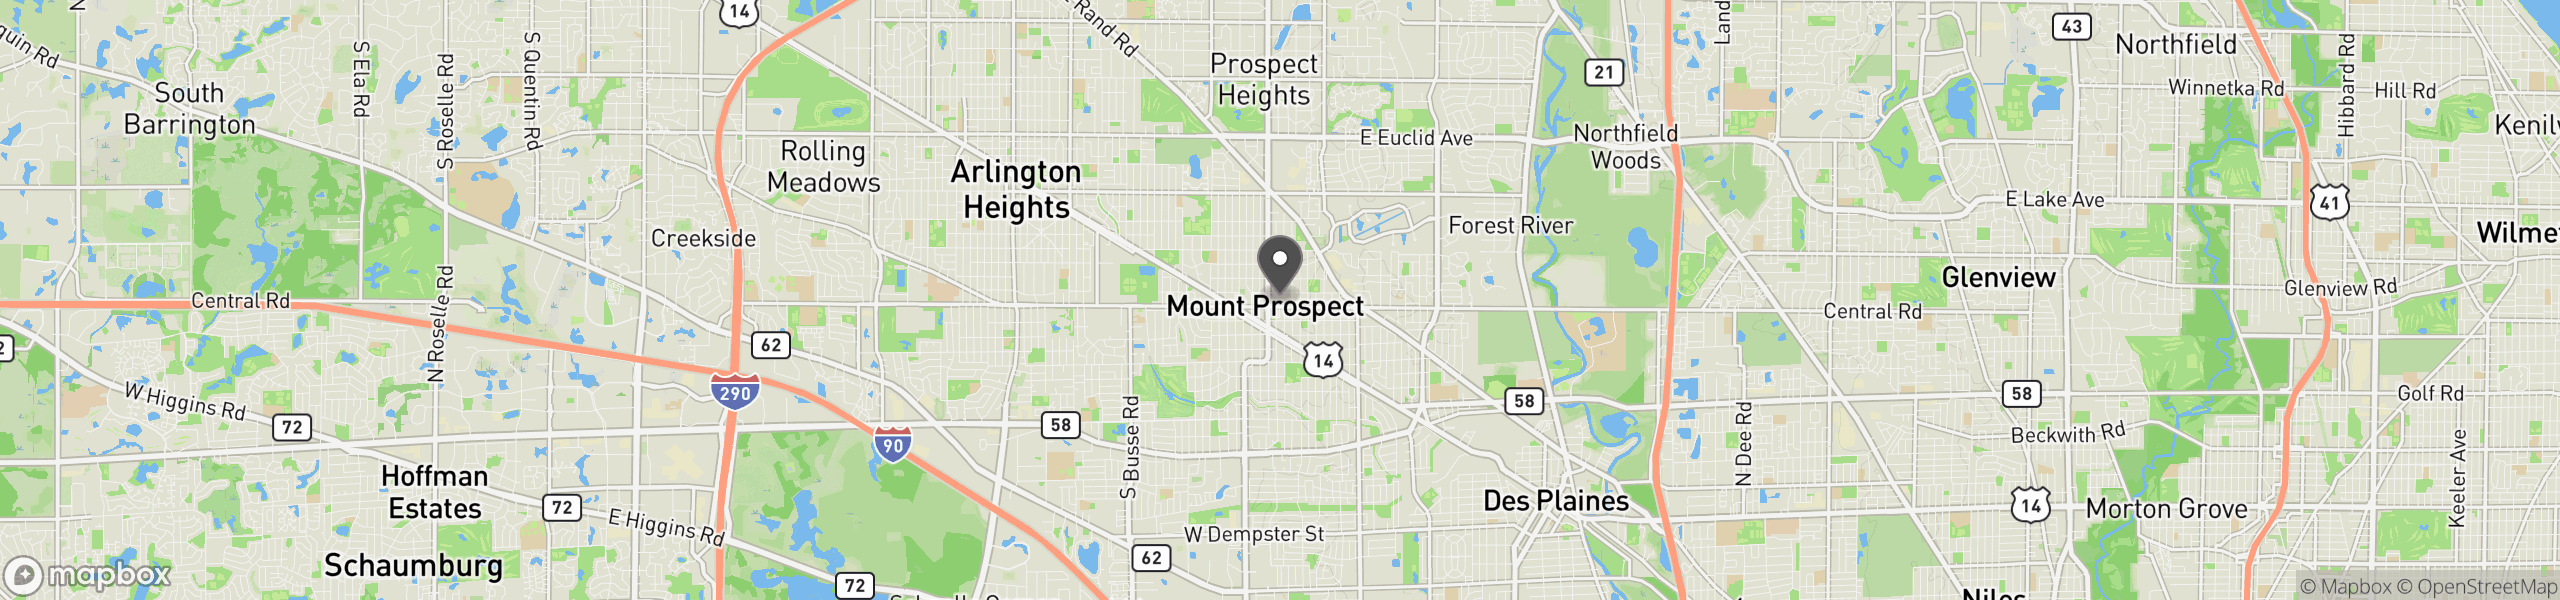 Mount Prospect, IL 60056